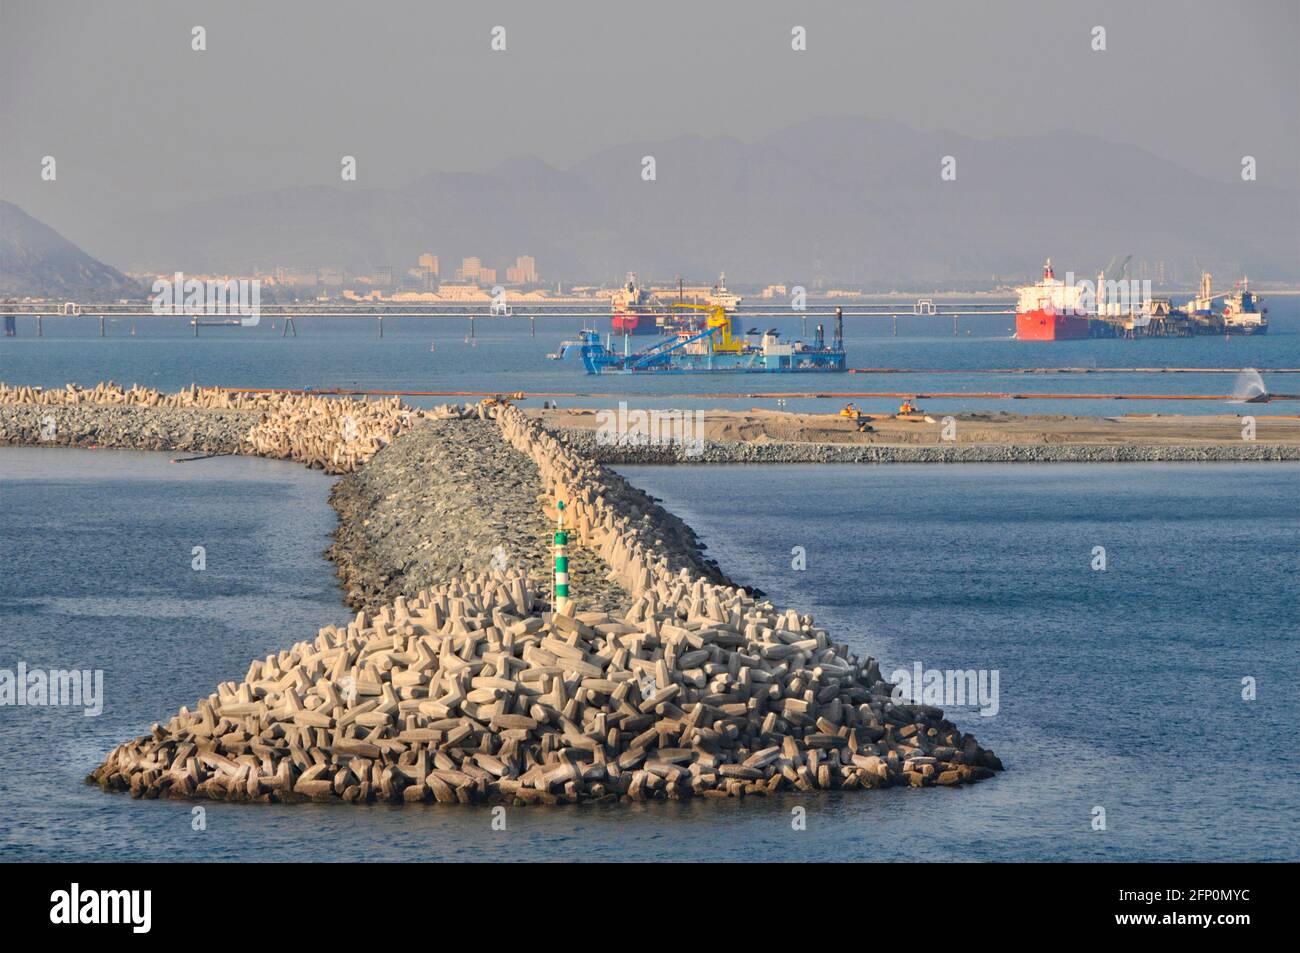 Schifffahrt & Dolosse Art Beton Hafen See Verteidigung vor der Küste der Vereinigten Arabischen Emirate Staat Fujairah ein Bunkerservice Hafen Golf von Oman VAE Stockfoto